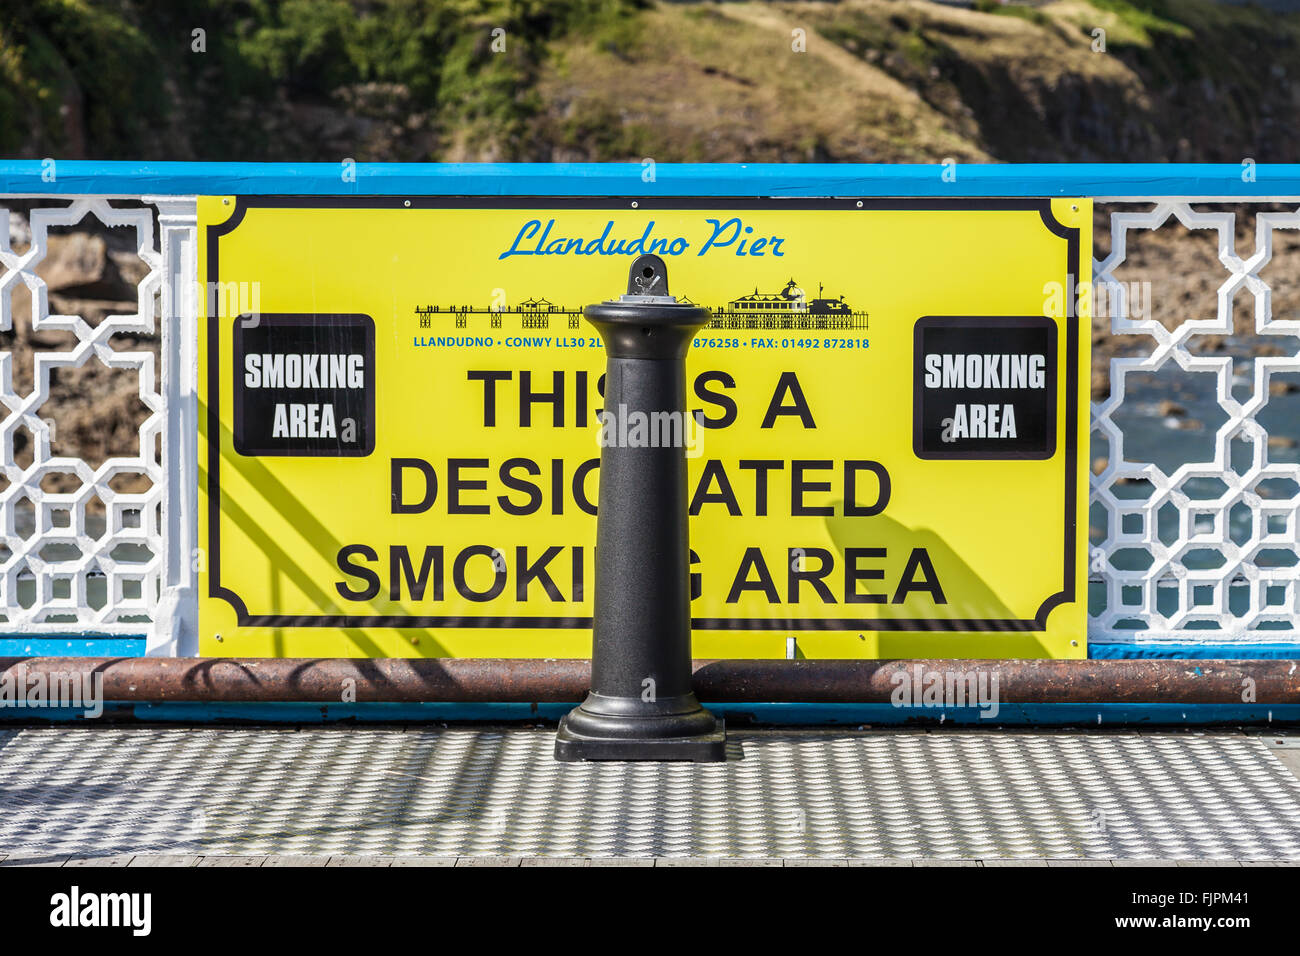 Giallo bacheca sul Llandudno Pier informare la gente di una zona designata zona fumatori. Llandudno, Galles, Gran Bretagna. Foto Stock